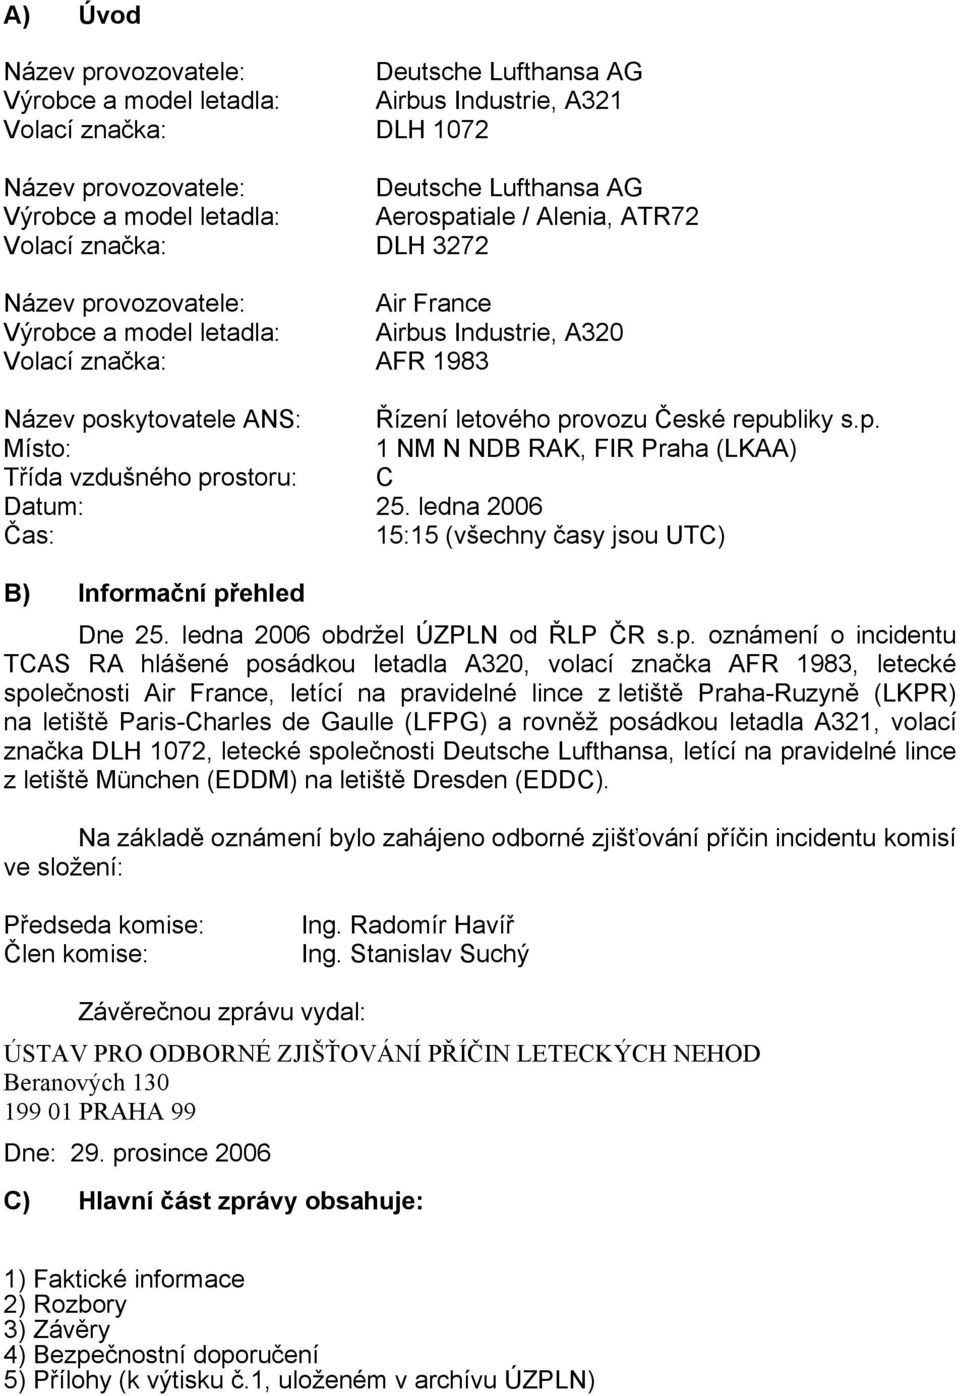 provozu České republiky s.p. Místo: 1 NM N NDB RAK, FIR Praha (LKAA) Třída vzdušného prostoru: C Datum: 25. ledna 2006 Čas: 15:15 (všechny časy jsou UTC) B) Informační přehled Dne 25.